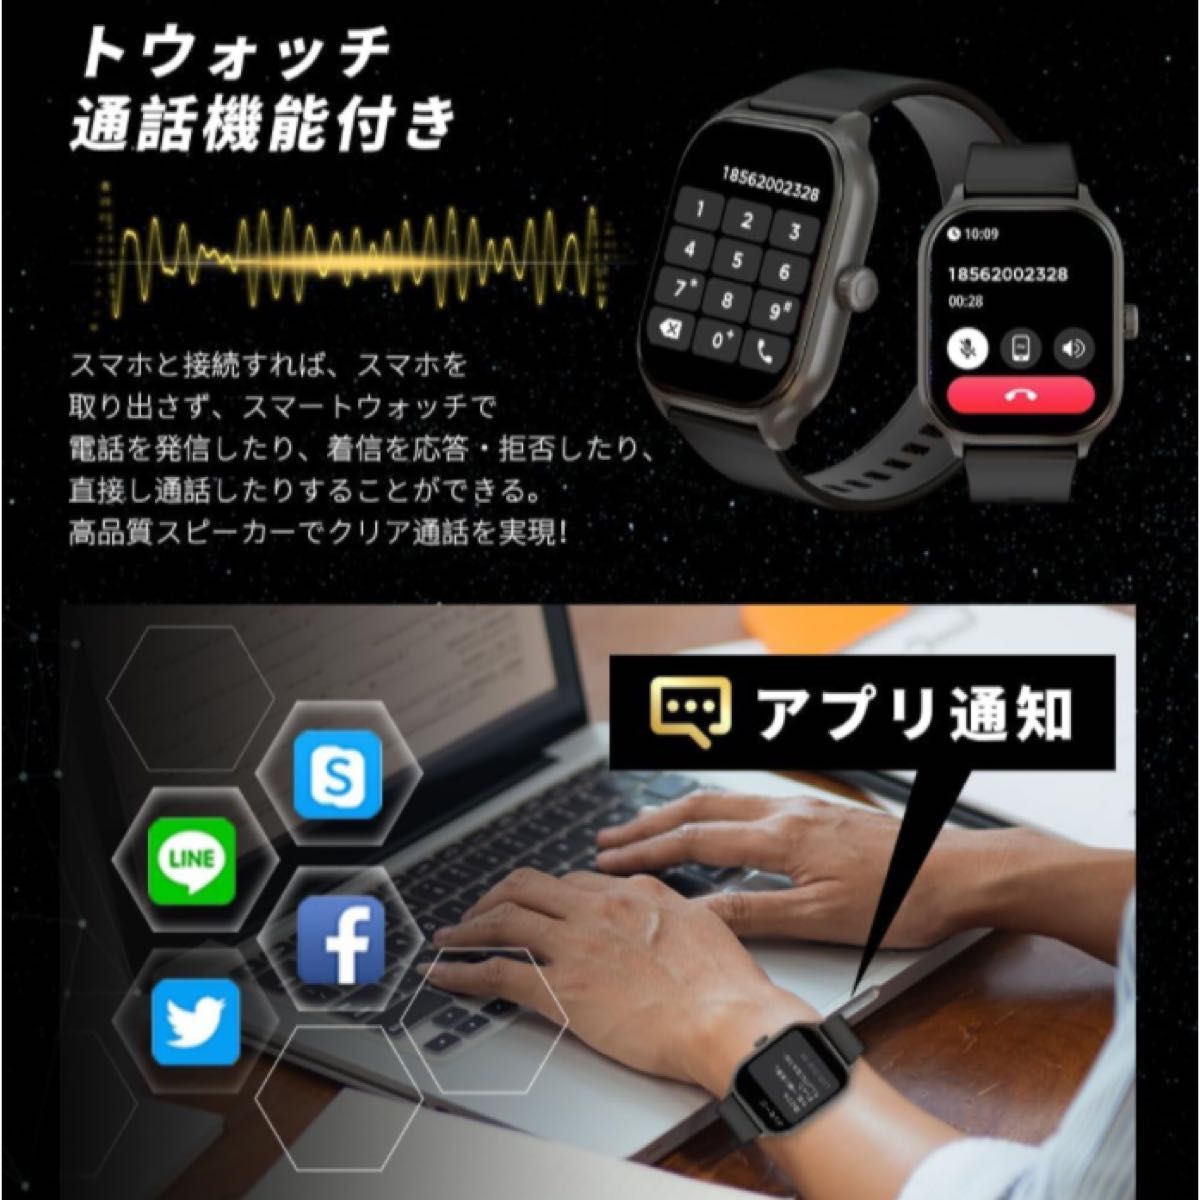 スマートウォッチ Bluetooth 通話機能 音楽再生 腕時計 活動量計 歩数計 IP68防水 大画面 フルタッチスクリーン